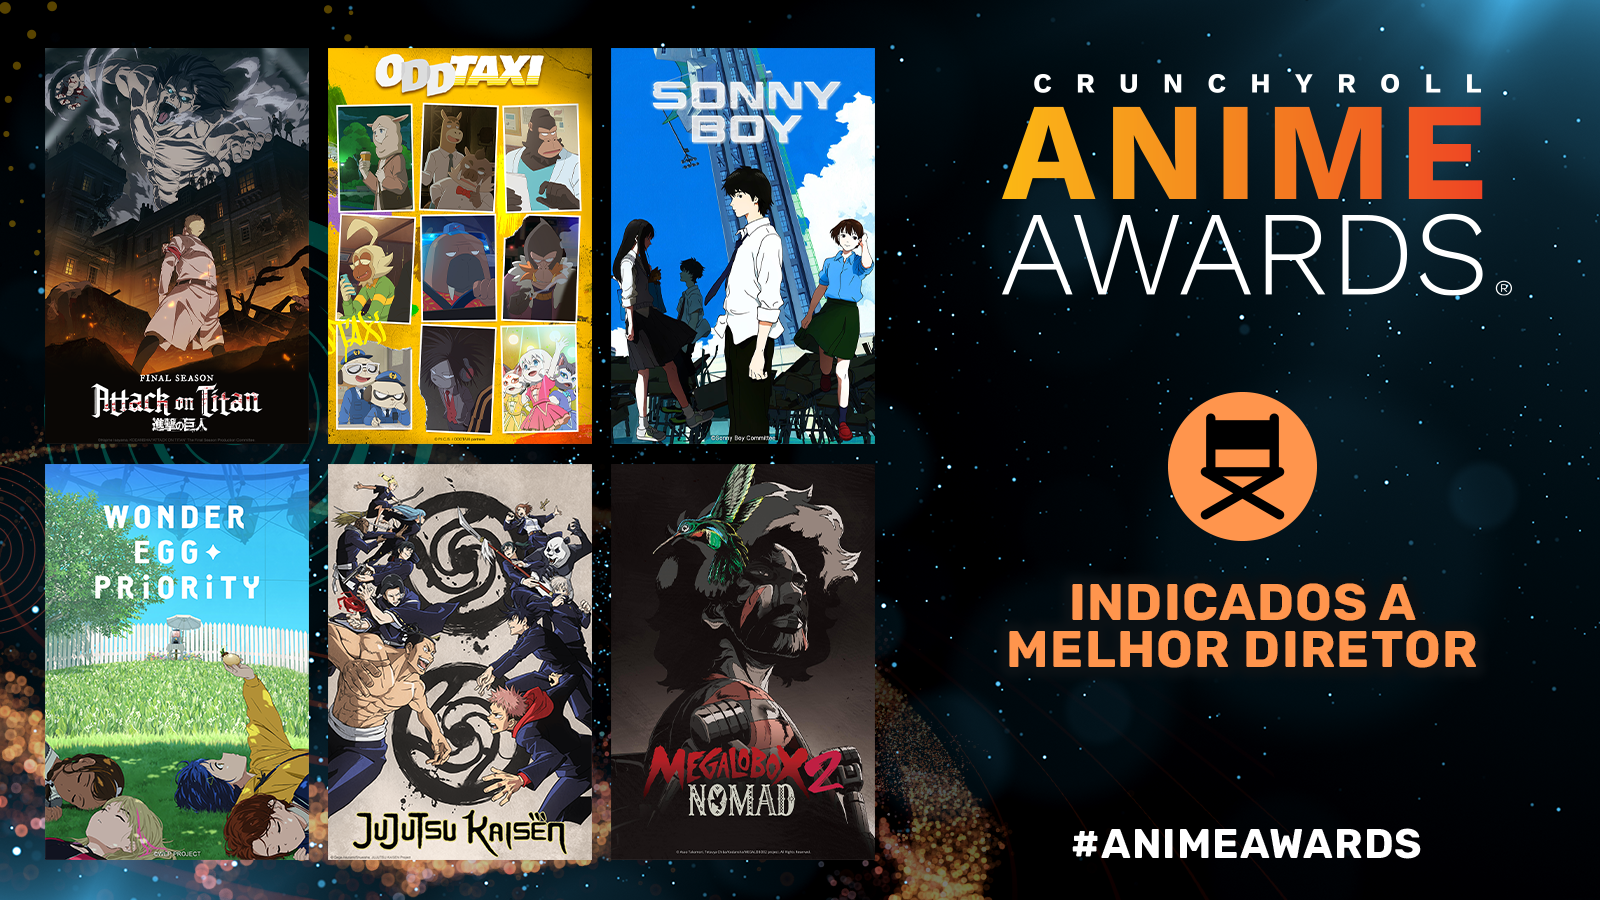 Crunchyroll Anime Awards 2022: indicados revelados!